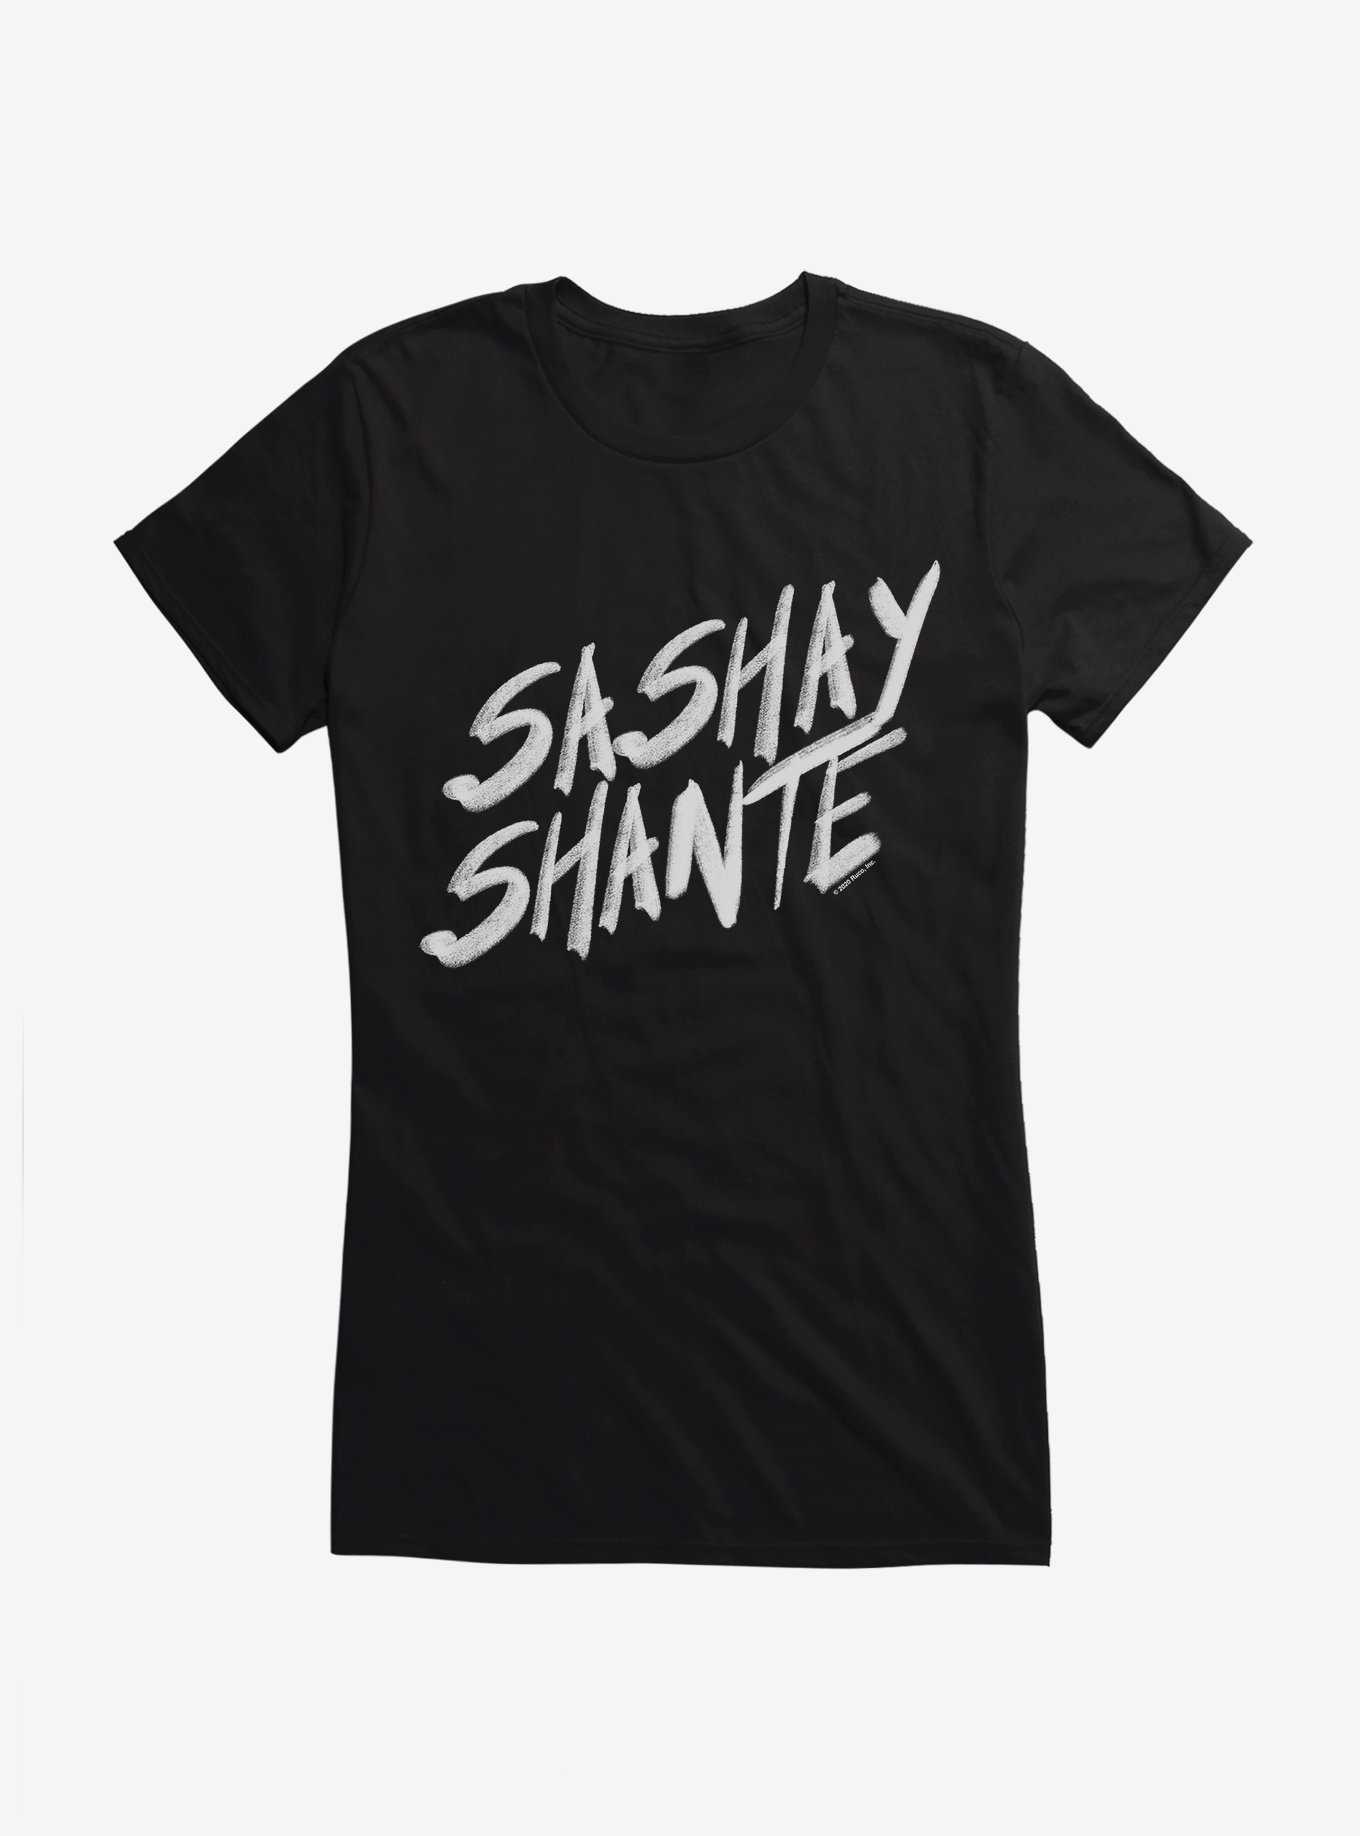 RuPaul Sashay Shante Girls T-Shirt, , hi-res